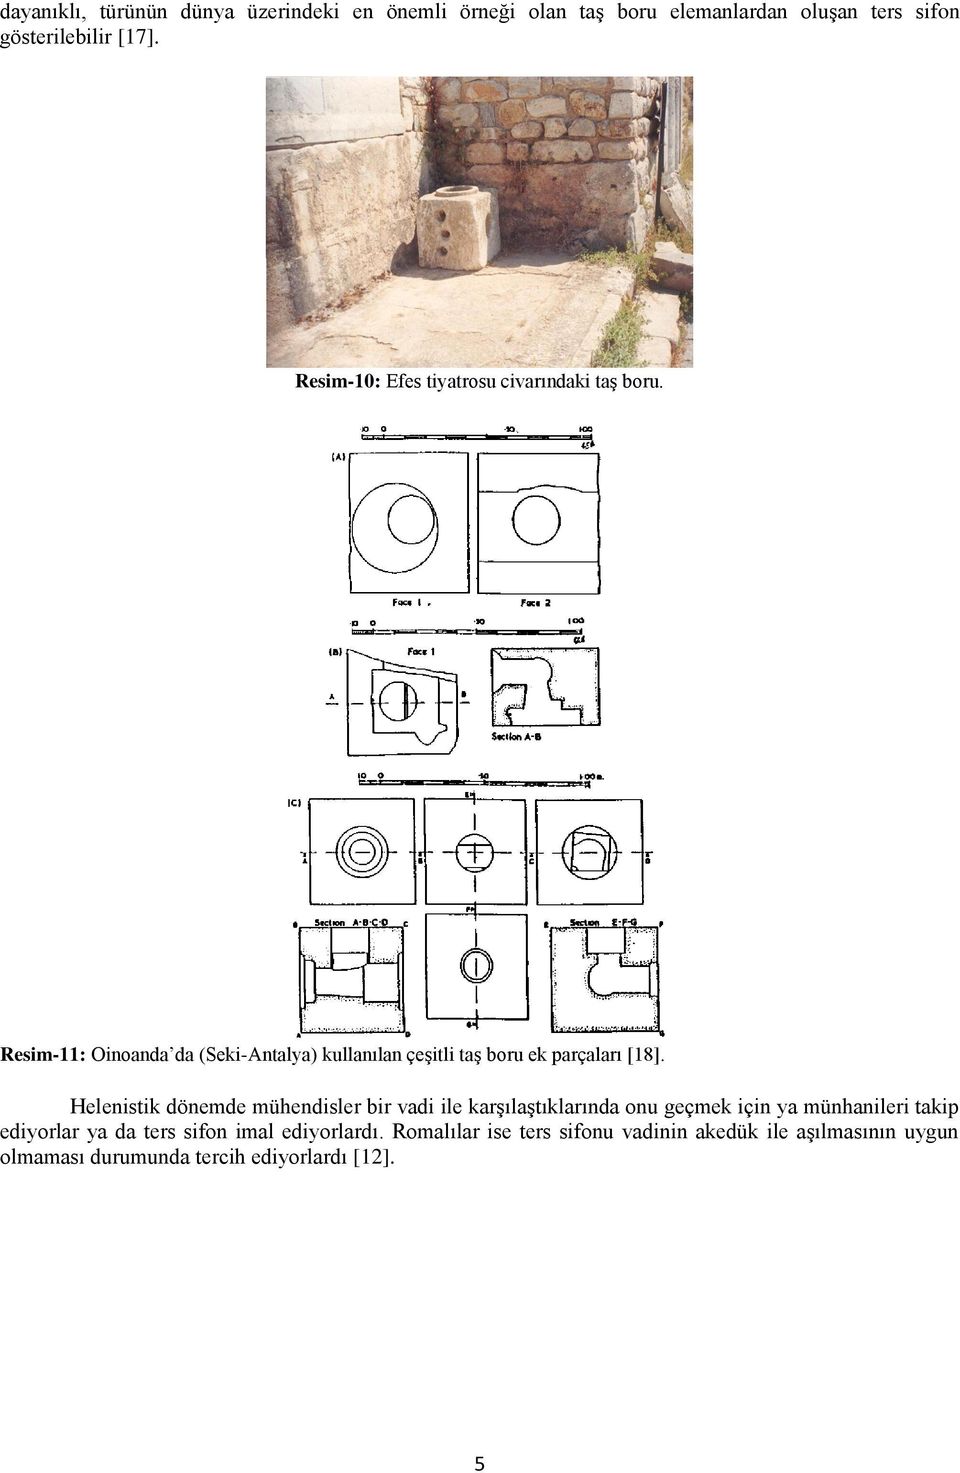 Resim-11: Oinoanda da (Seki-Antalya) kullanılan çeşitli taş boru ek parçaları [18].